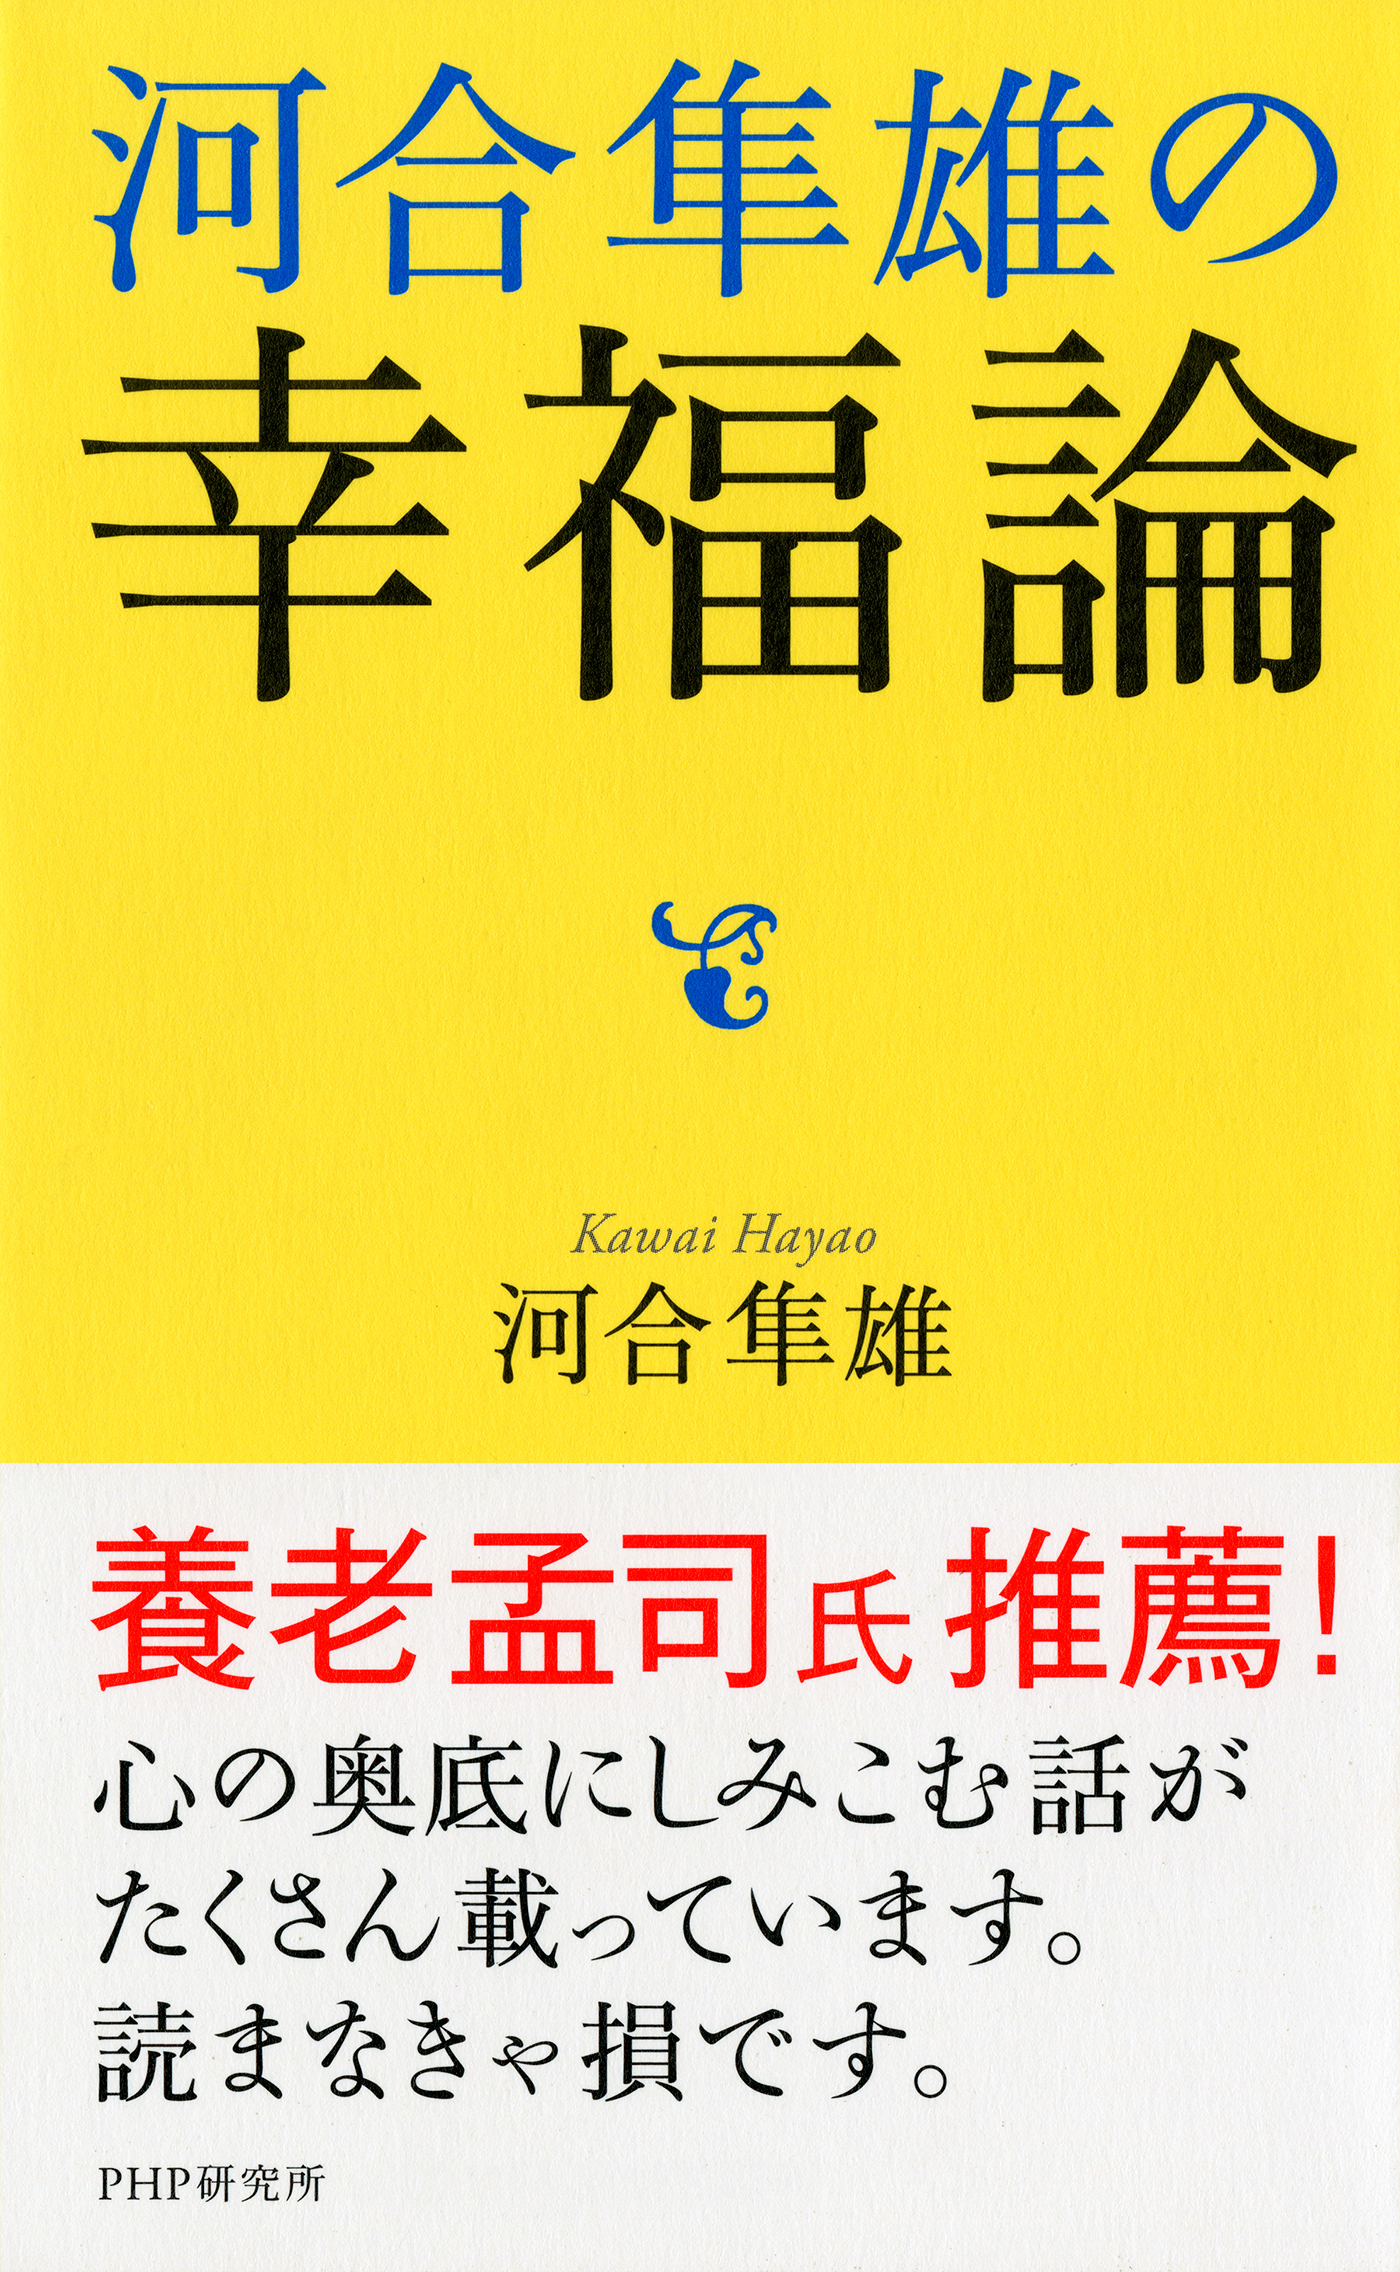 河合隼雄の幸福論(書籍) - 電子書籍 | U-NEXT 初回600円分無料